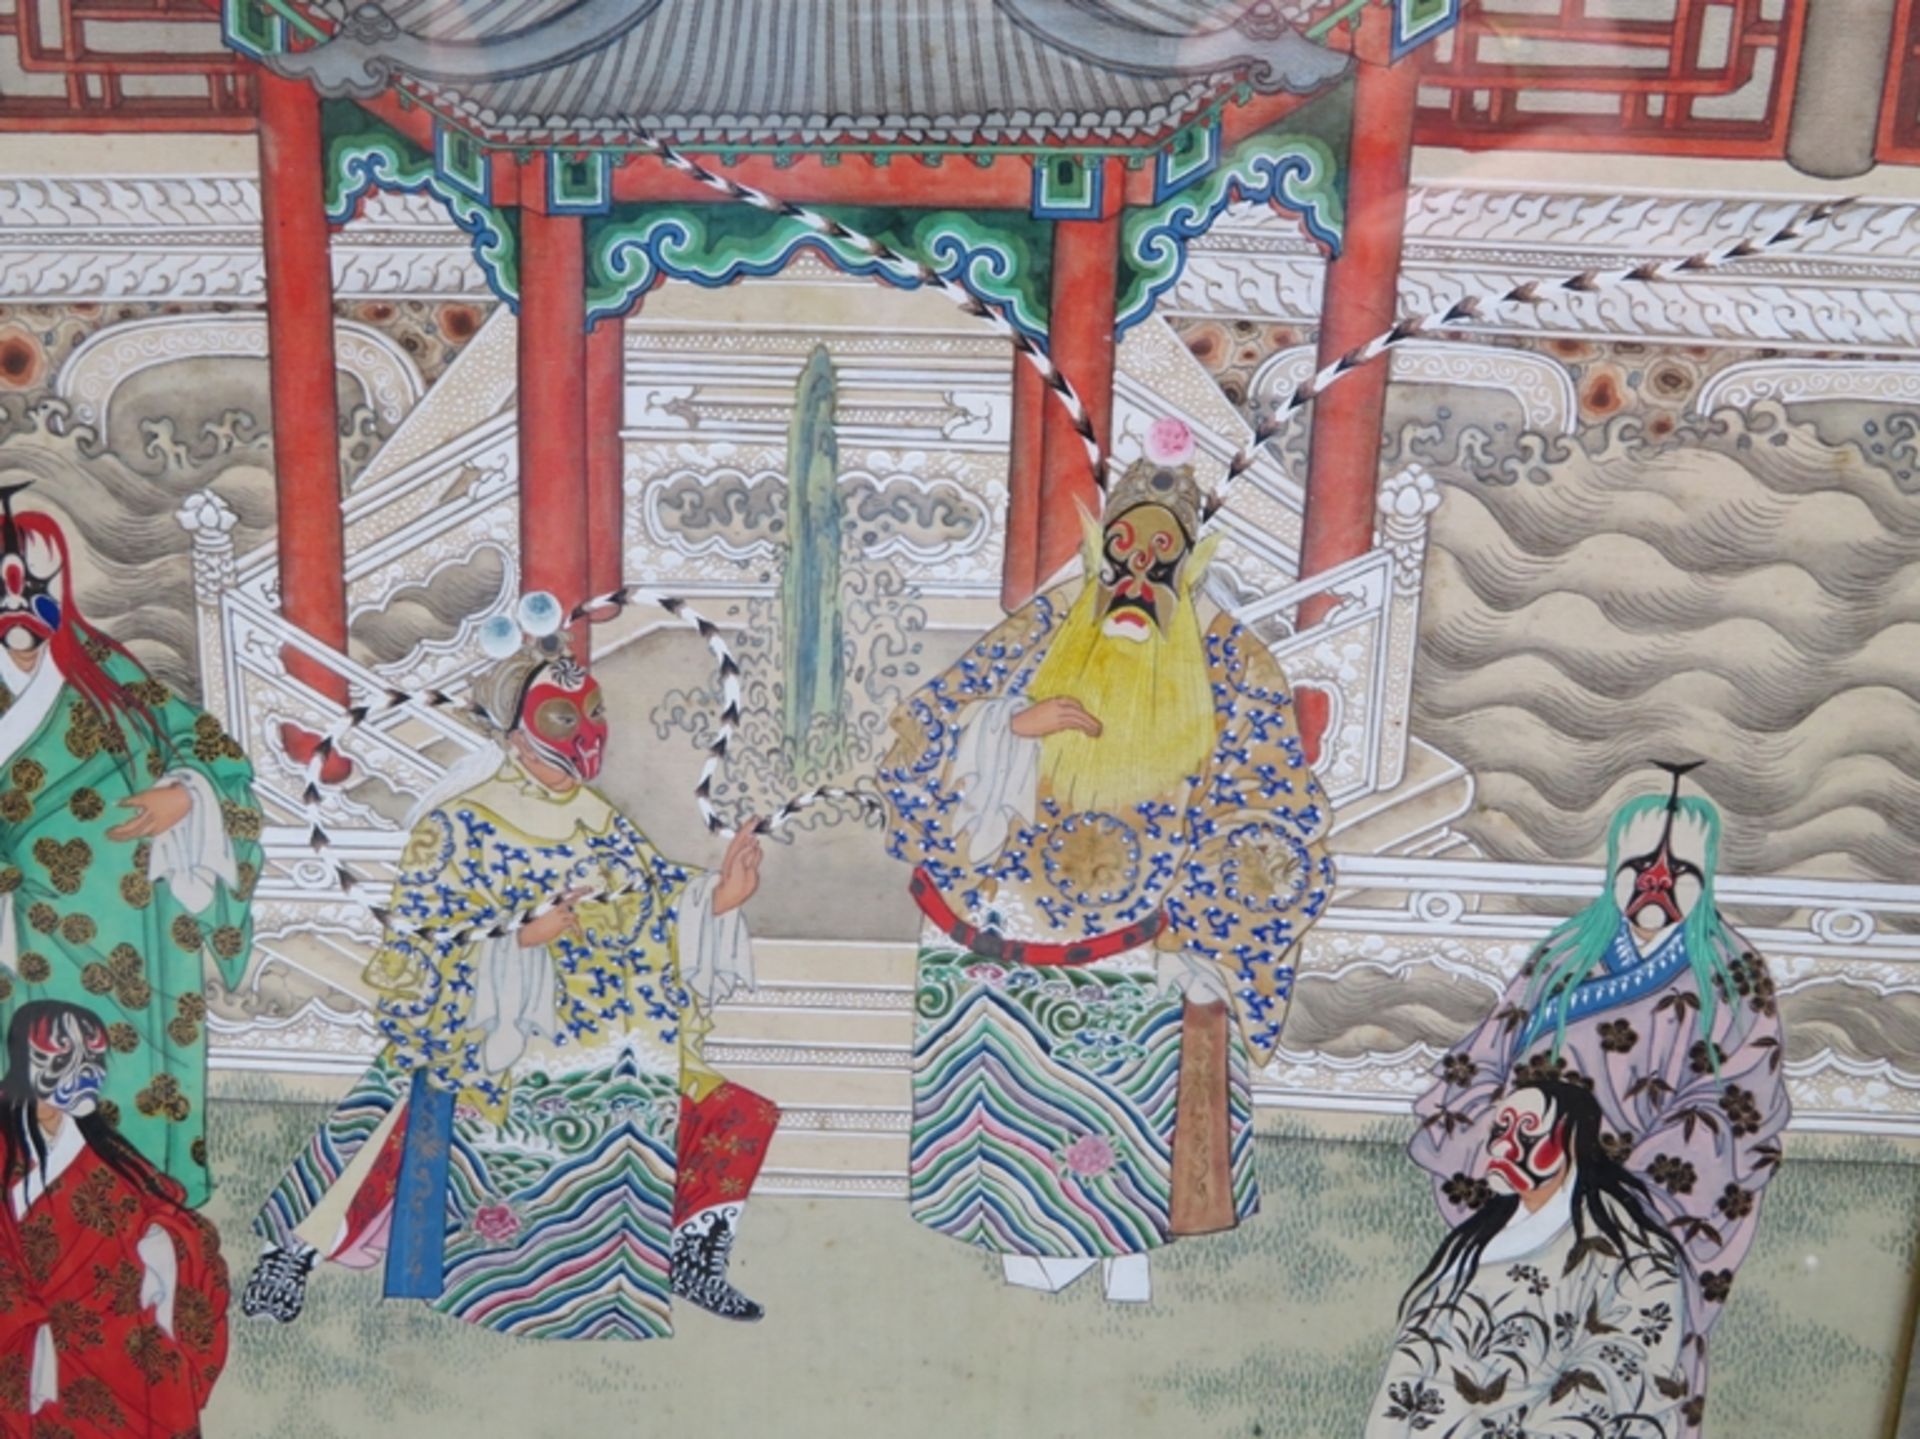 Feine Seidenmalerei, China, um 1900, "Opernschauspieler", verso beschrieben, 34 x 27 cm, R. [52 x 4 - Image 2 of 2